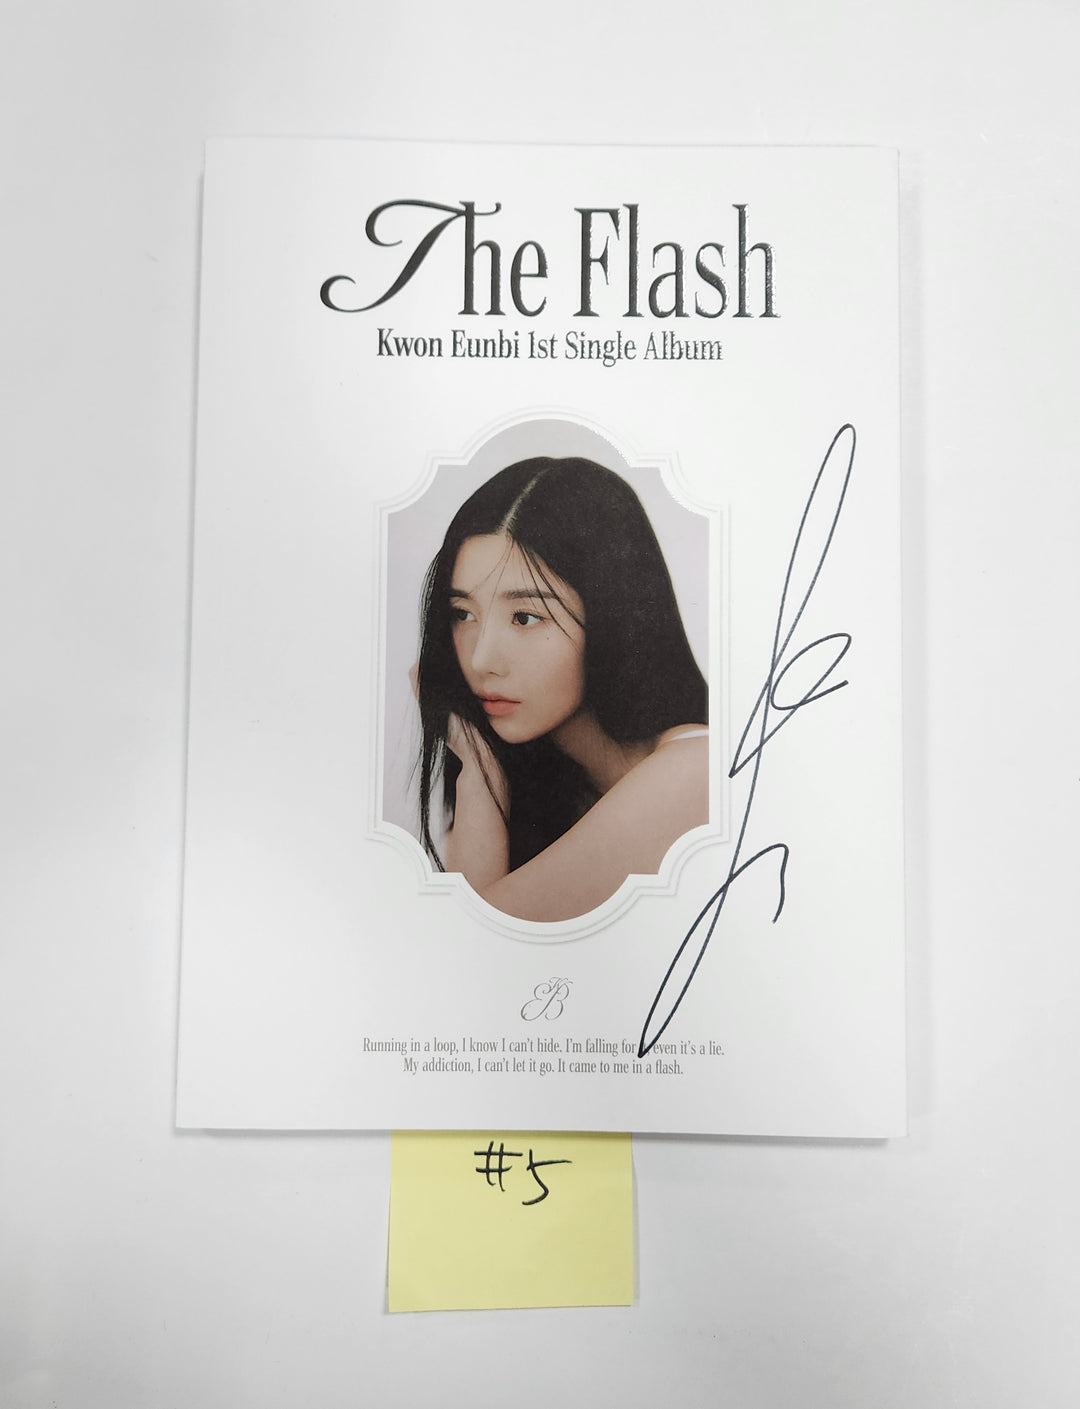 Kwon Eunbi 1st single "The Flash" - Hand Autographed(Signed) Promo Album